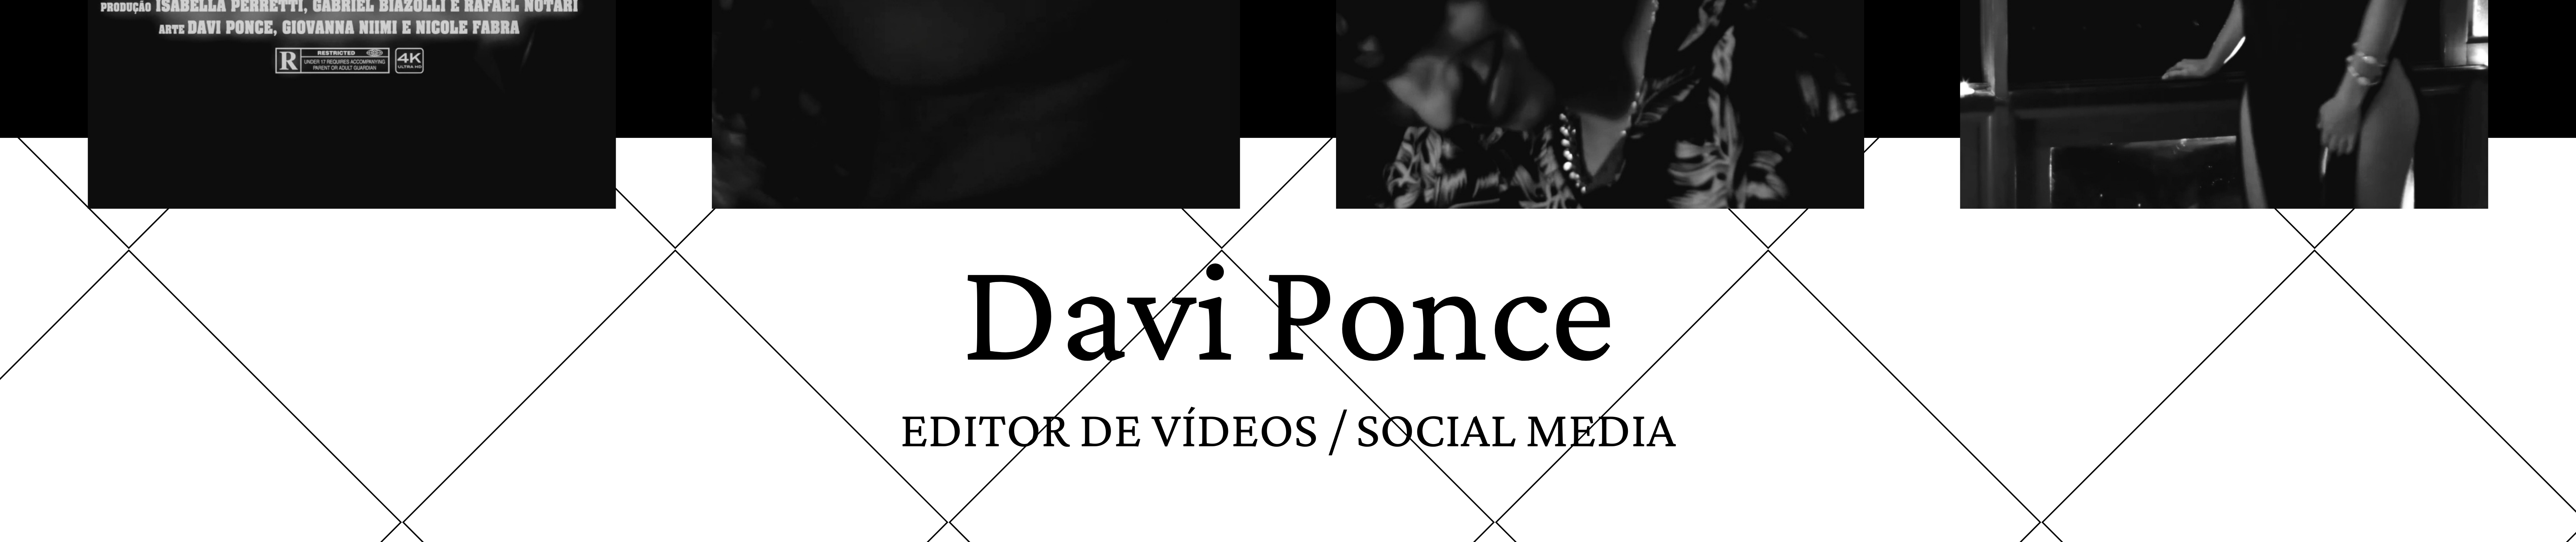 Bannière de profil de Davi Ponce